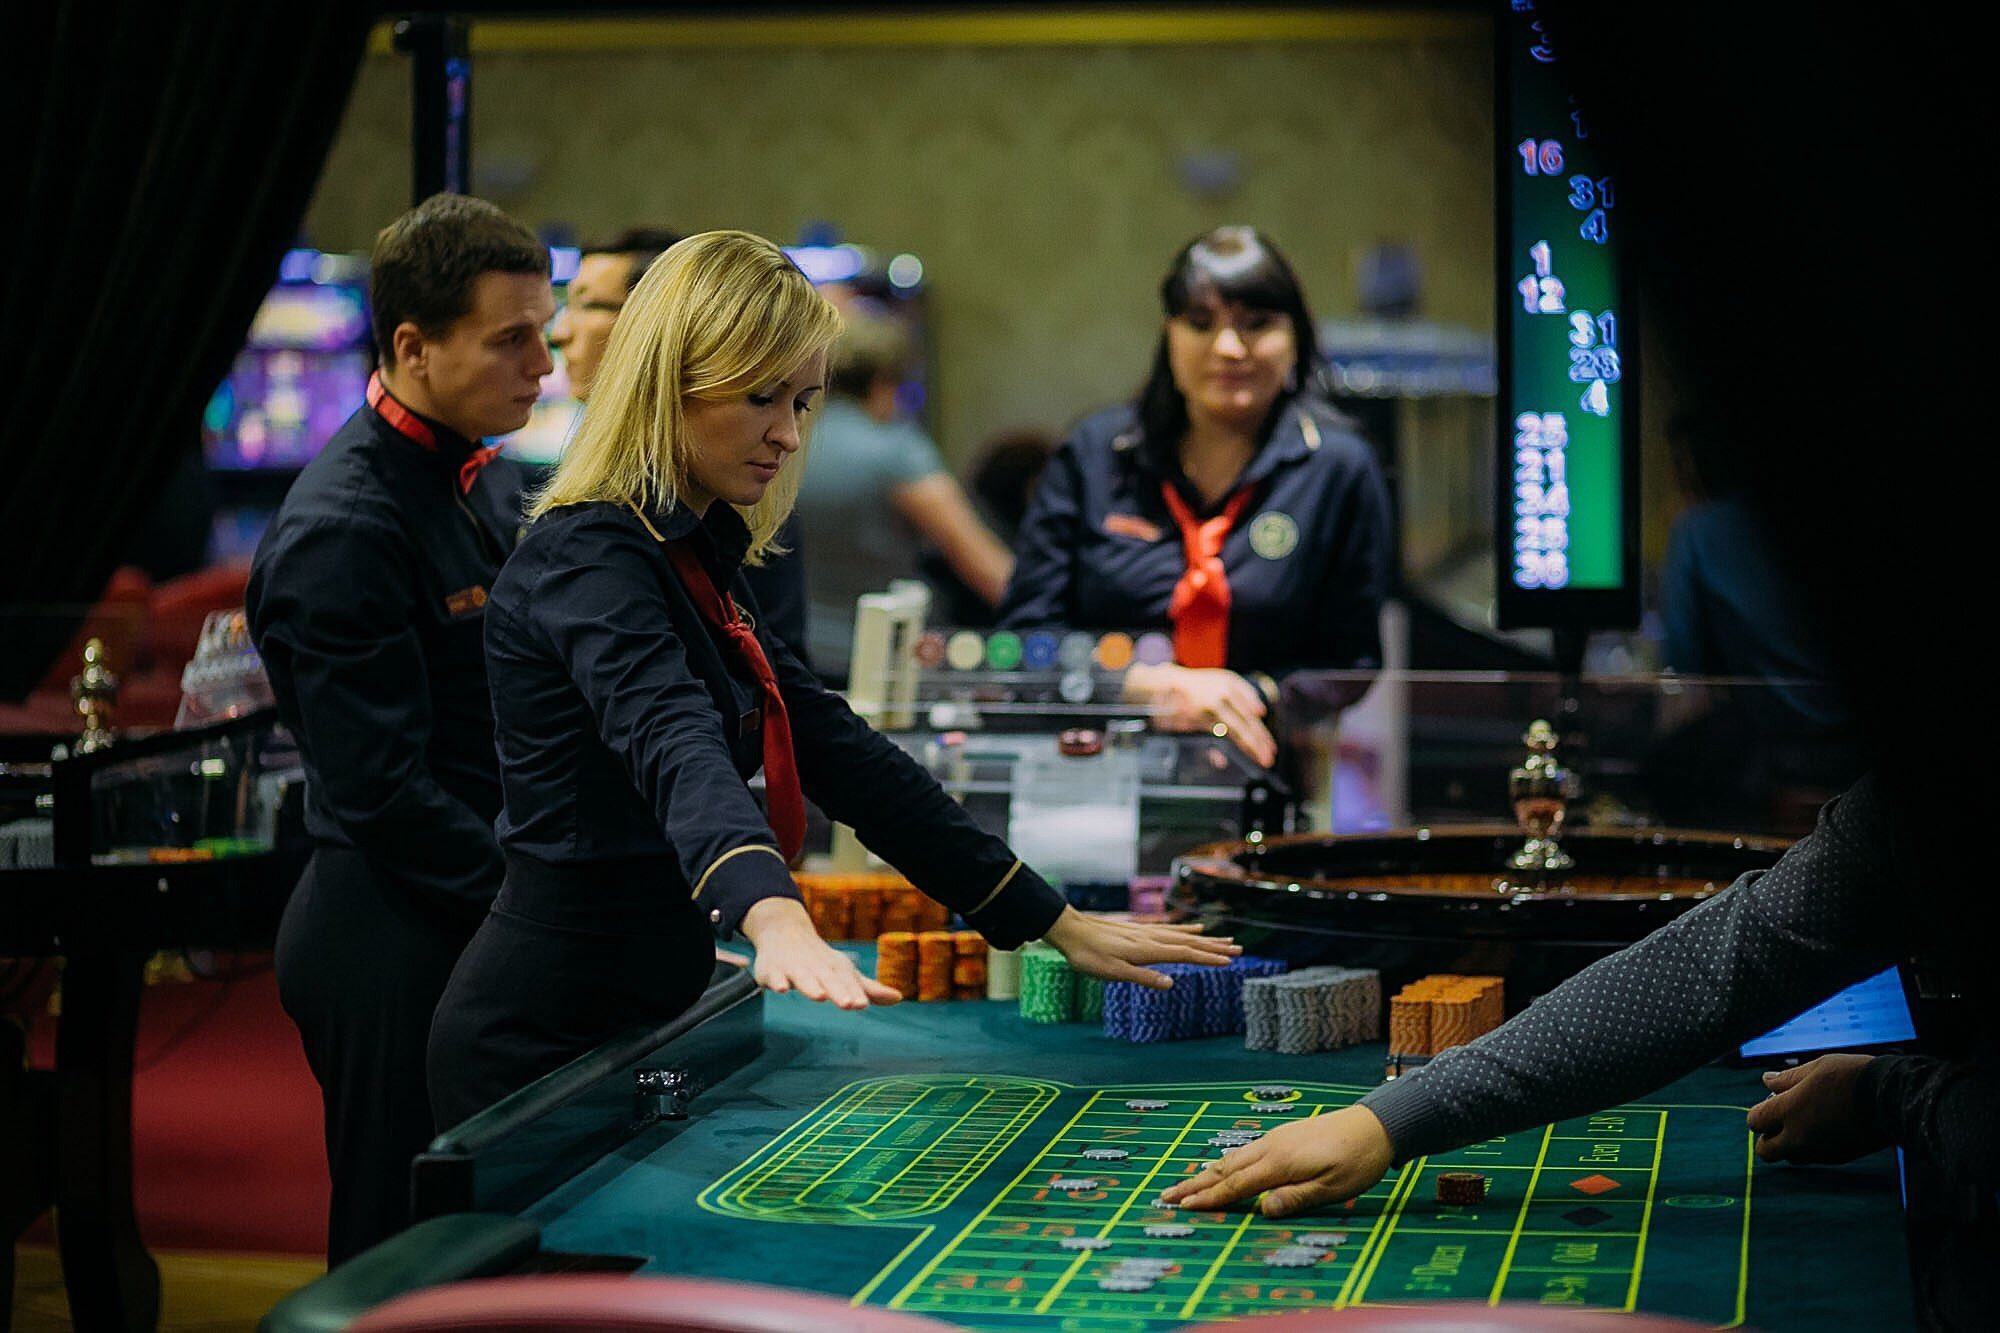 Online casino в россии в опере реклама казино